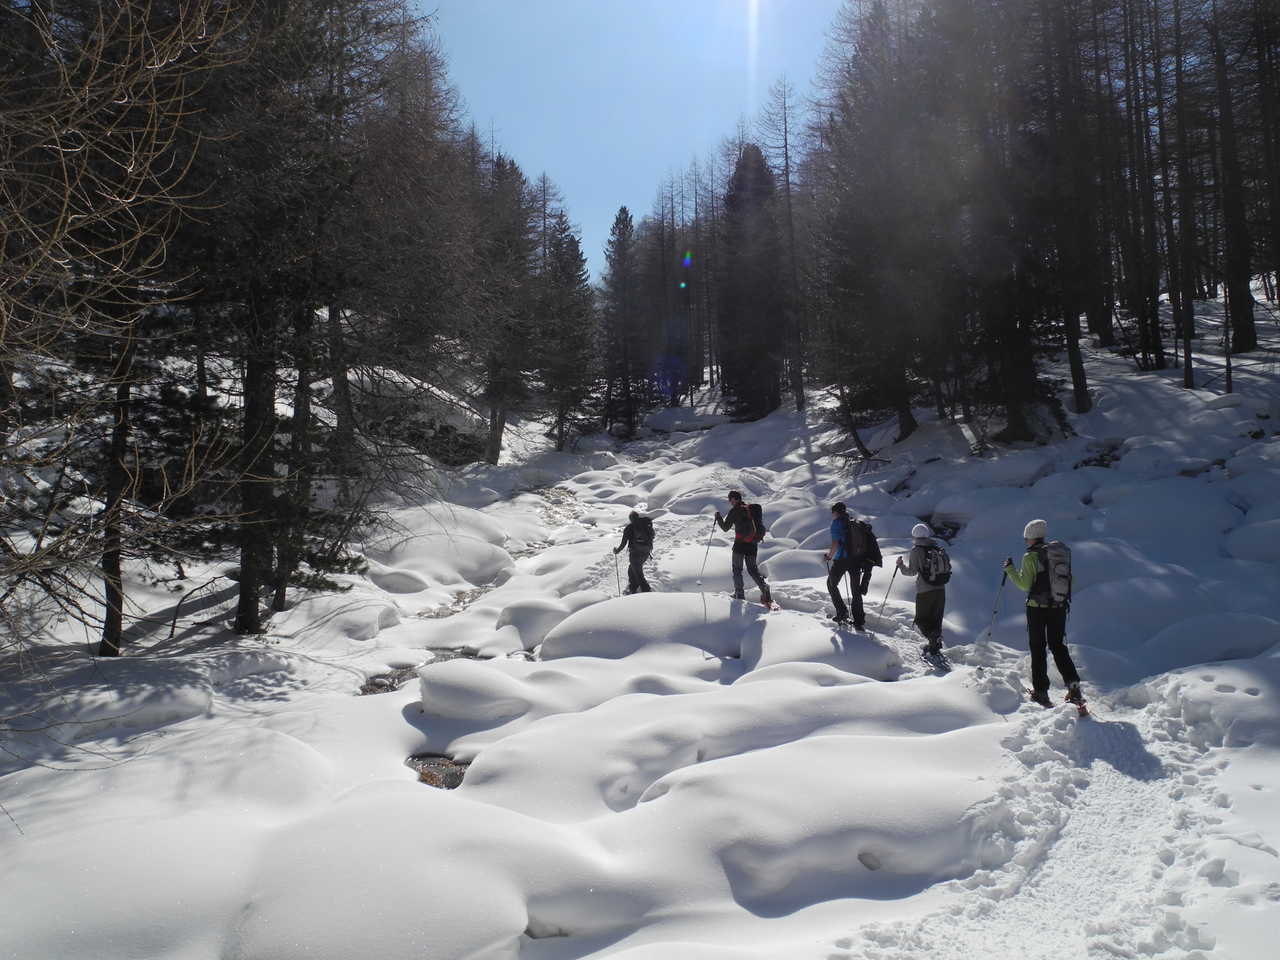 groupe de randonneurs en pleine randonnée dans une forêt de sapin au sud est de la France dans les Alpes